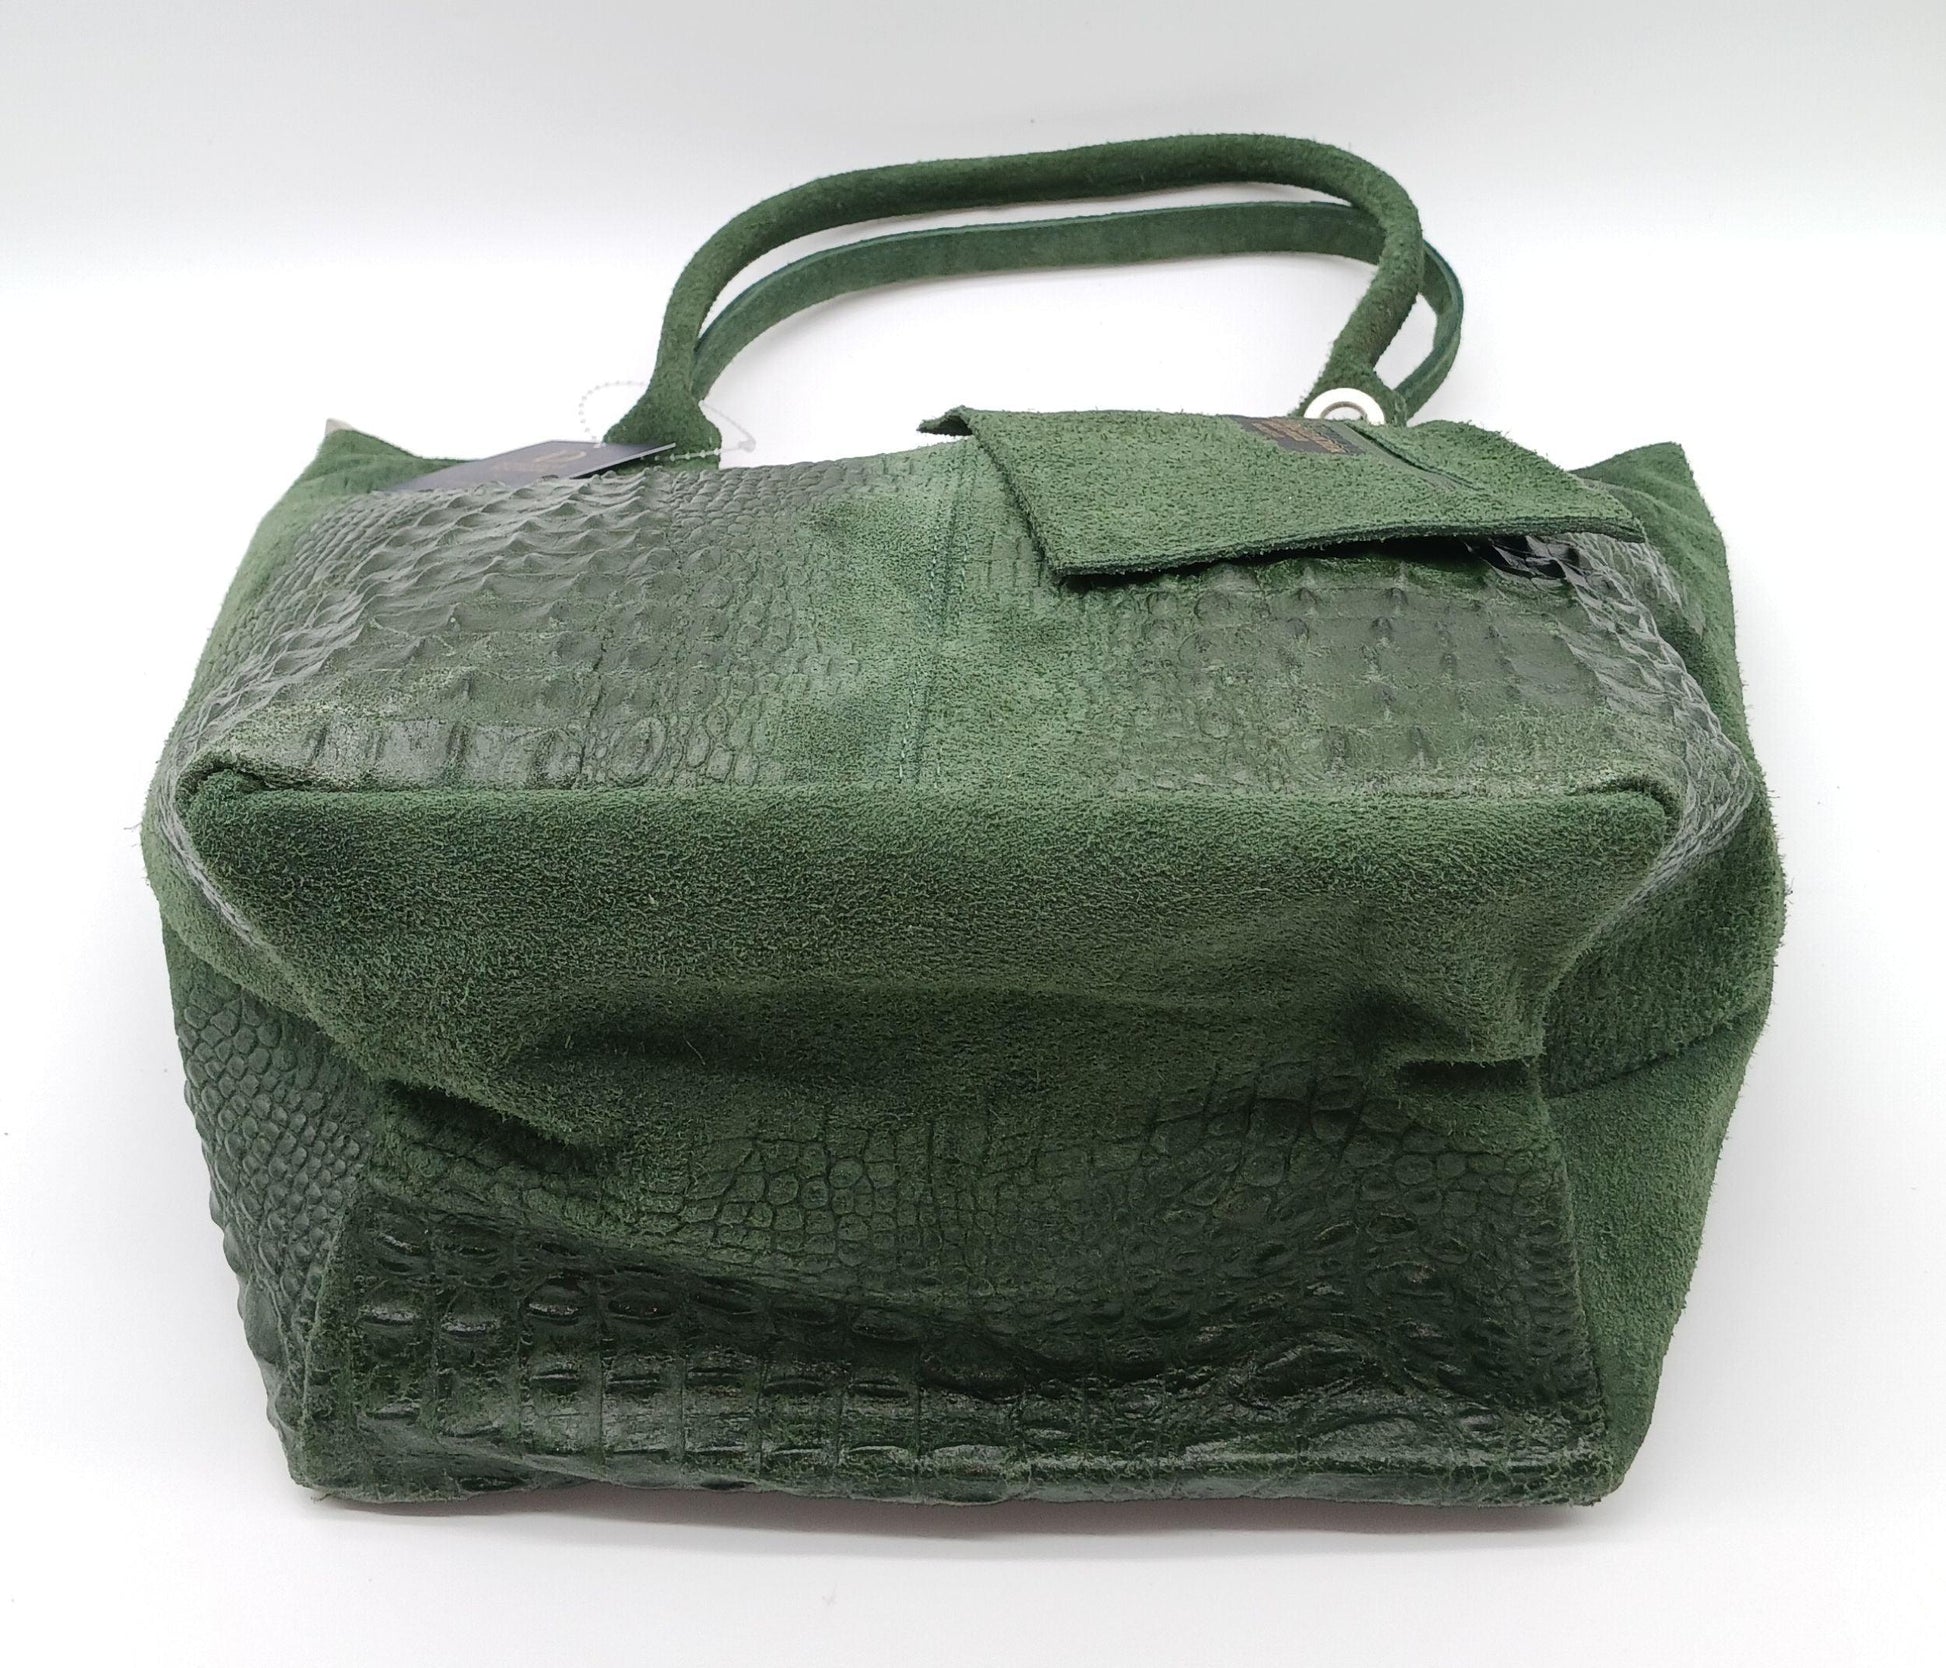 lederer green suede 1970s shoulder bag purse handbag Italian Italy